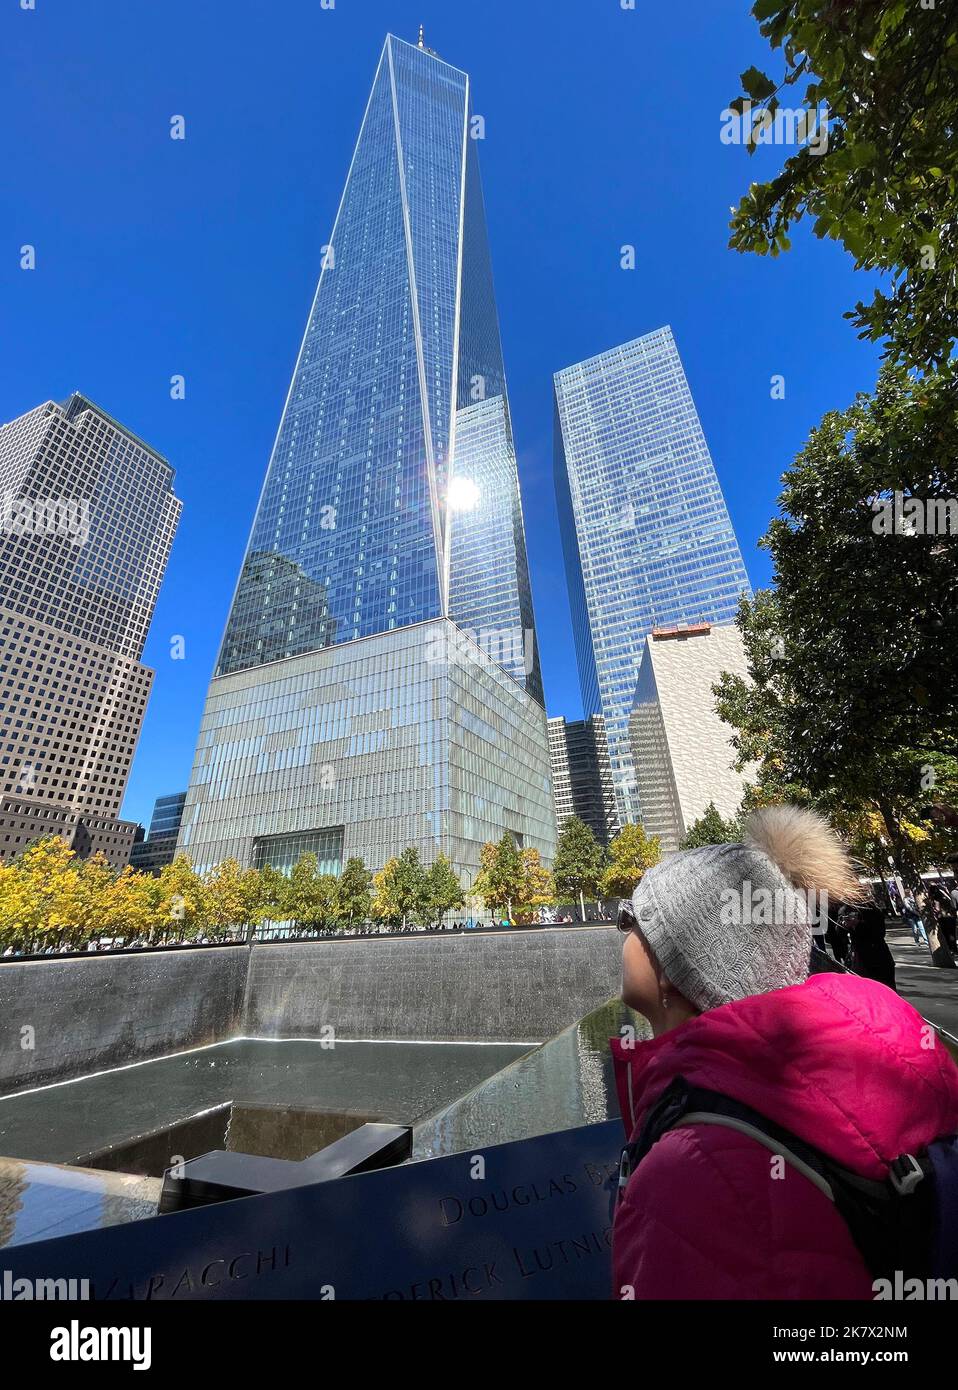 Adolescente touriste en admirant la Tour de la liberté et la fontaine. Tour de la liberté et fontaine commémorative commémorant les attaques de 11 septembre de 2001, loc Banque D'Images